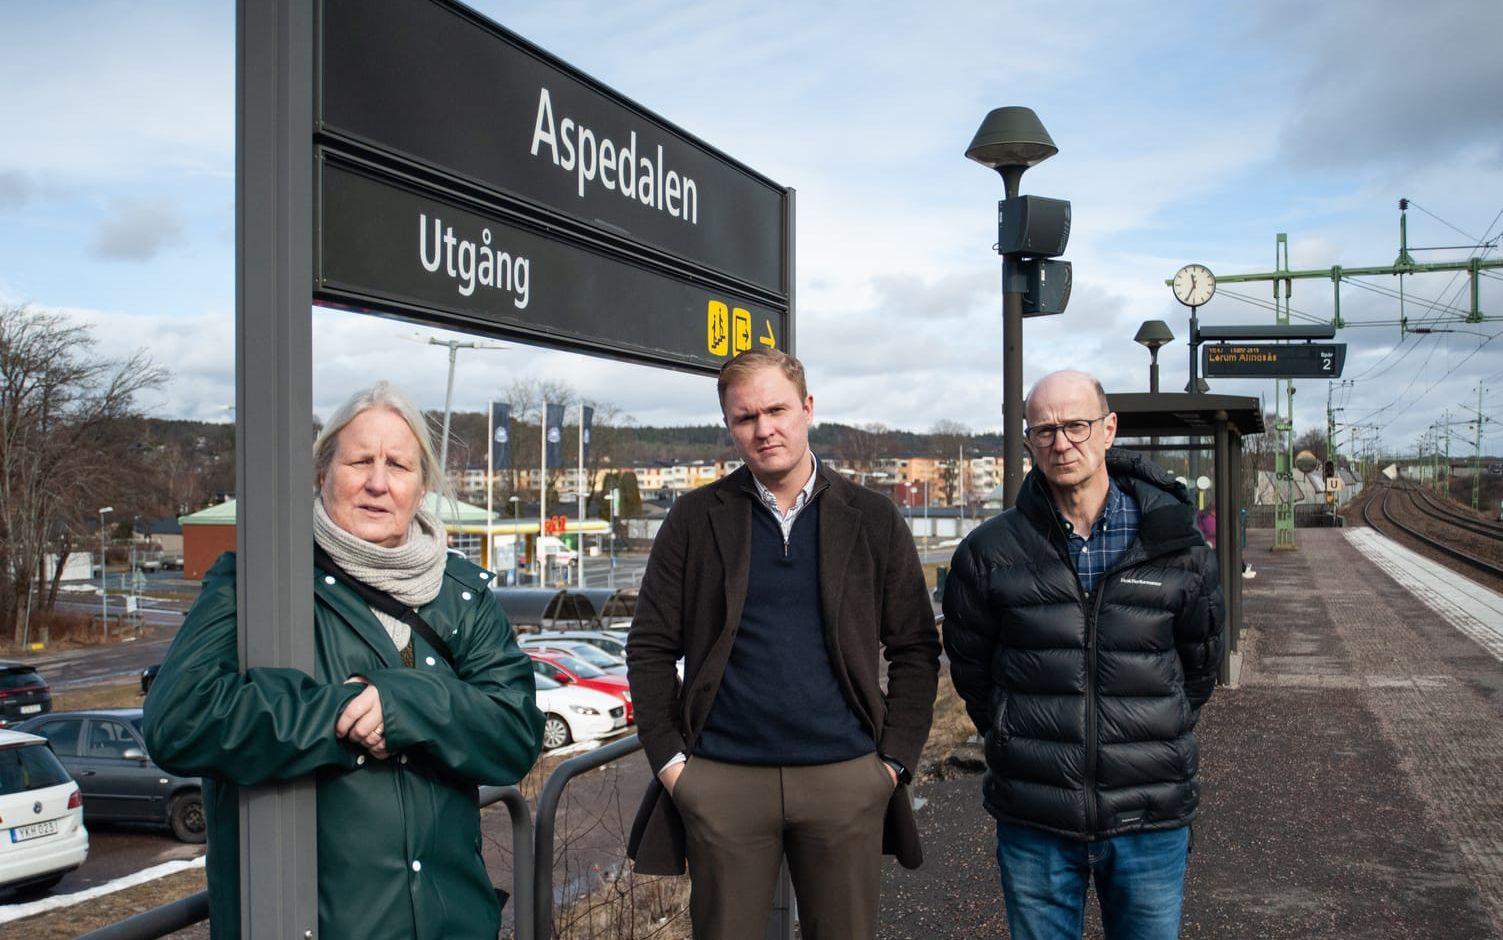 Toppolitikerna i kommunen tog strid för fortlevnaden av Aspedalen tågstation, omkring vilken hundratals nya bostäder är planerade. På bild syns Renée Bengtsson (S), Viktor Lundblad (M) och Arne Molander (M).